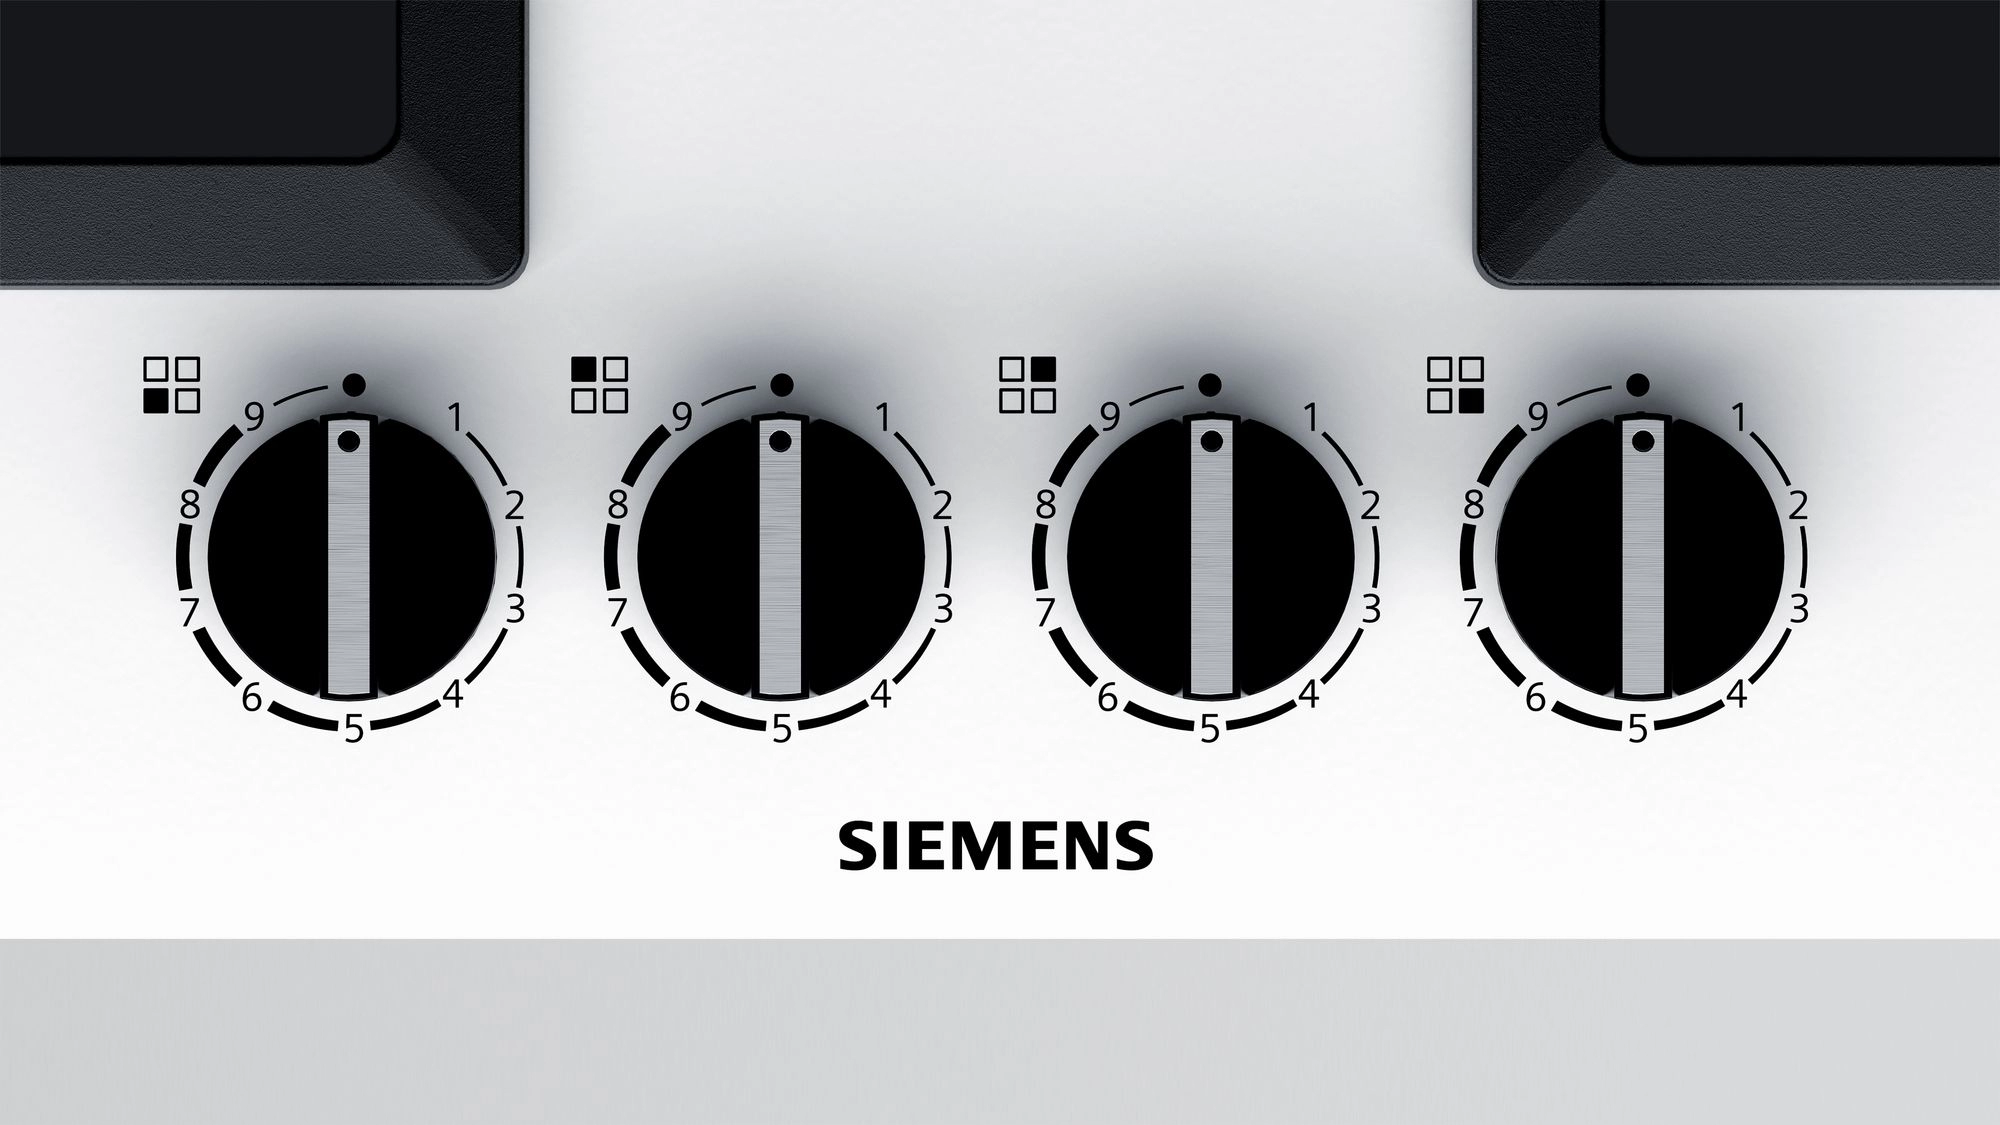 Встраиваемая  газовая панель Siemens EP6A2PB20R, 4 конфорок, Белый